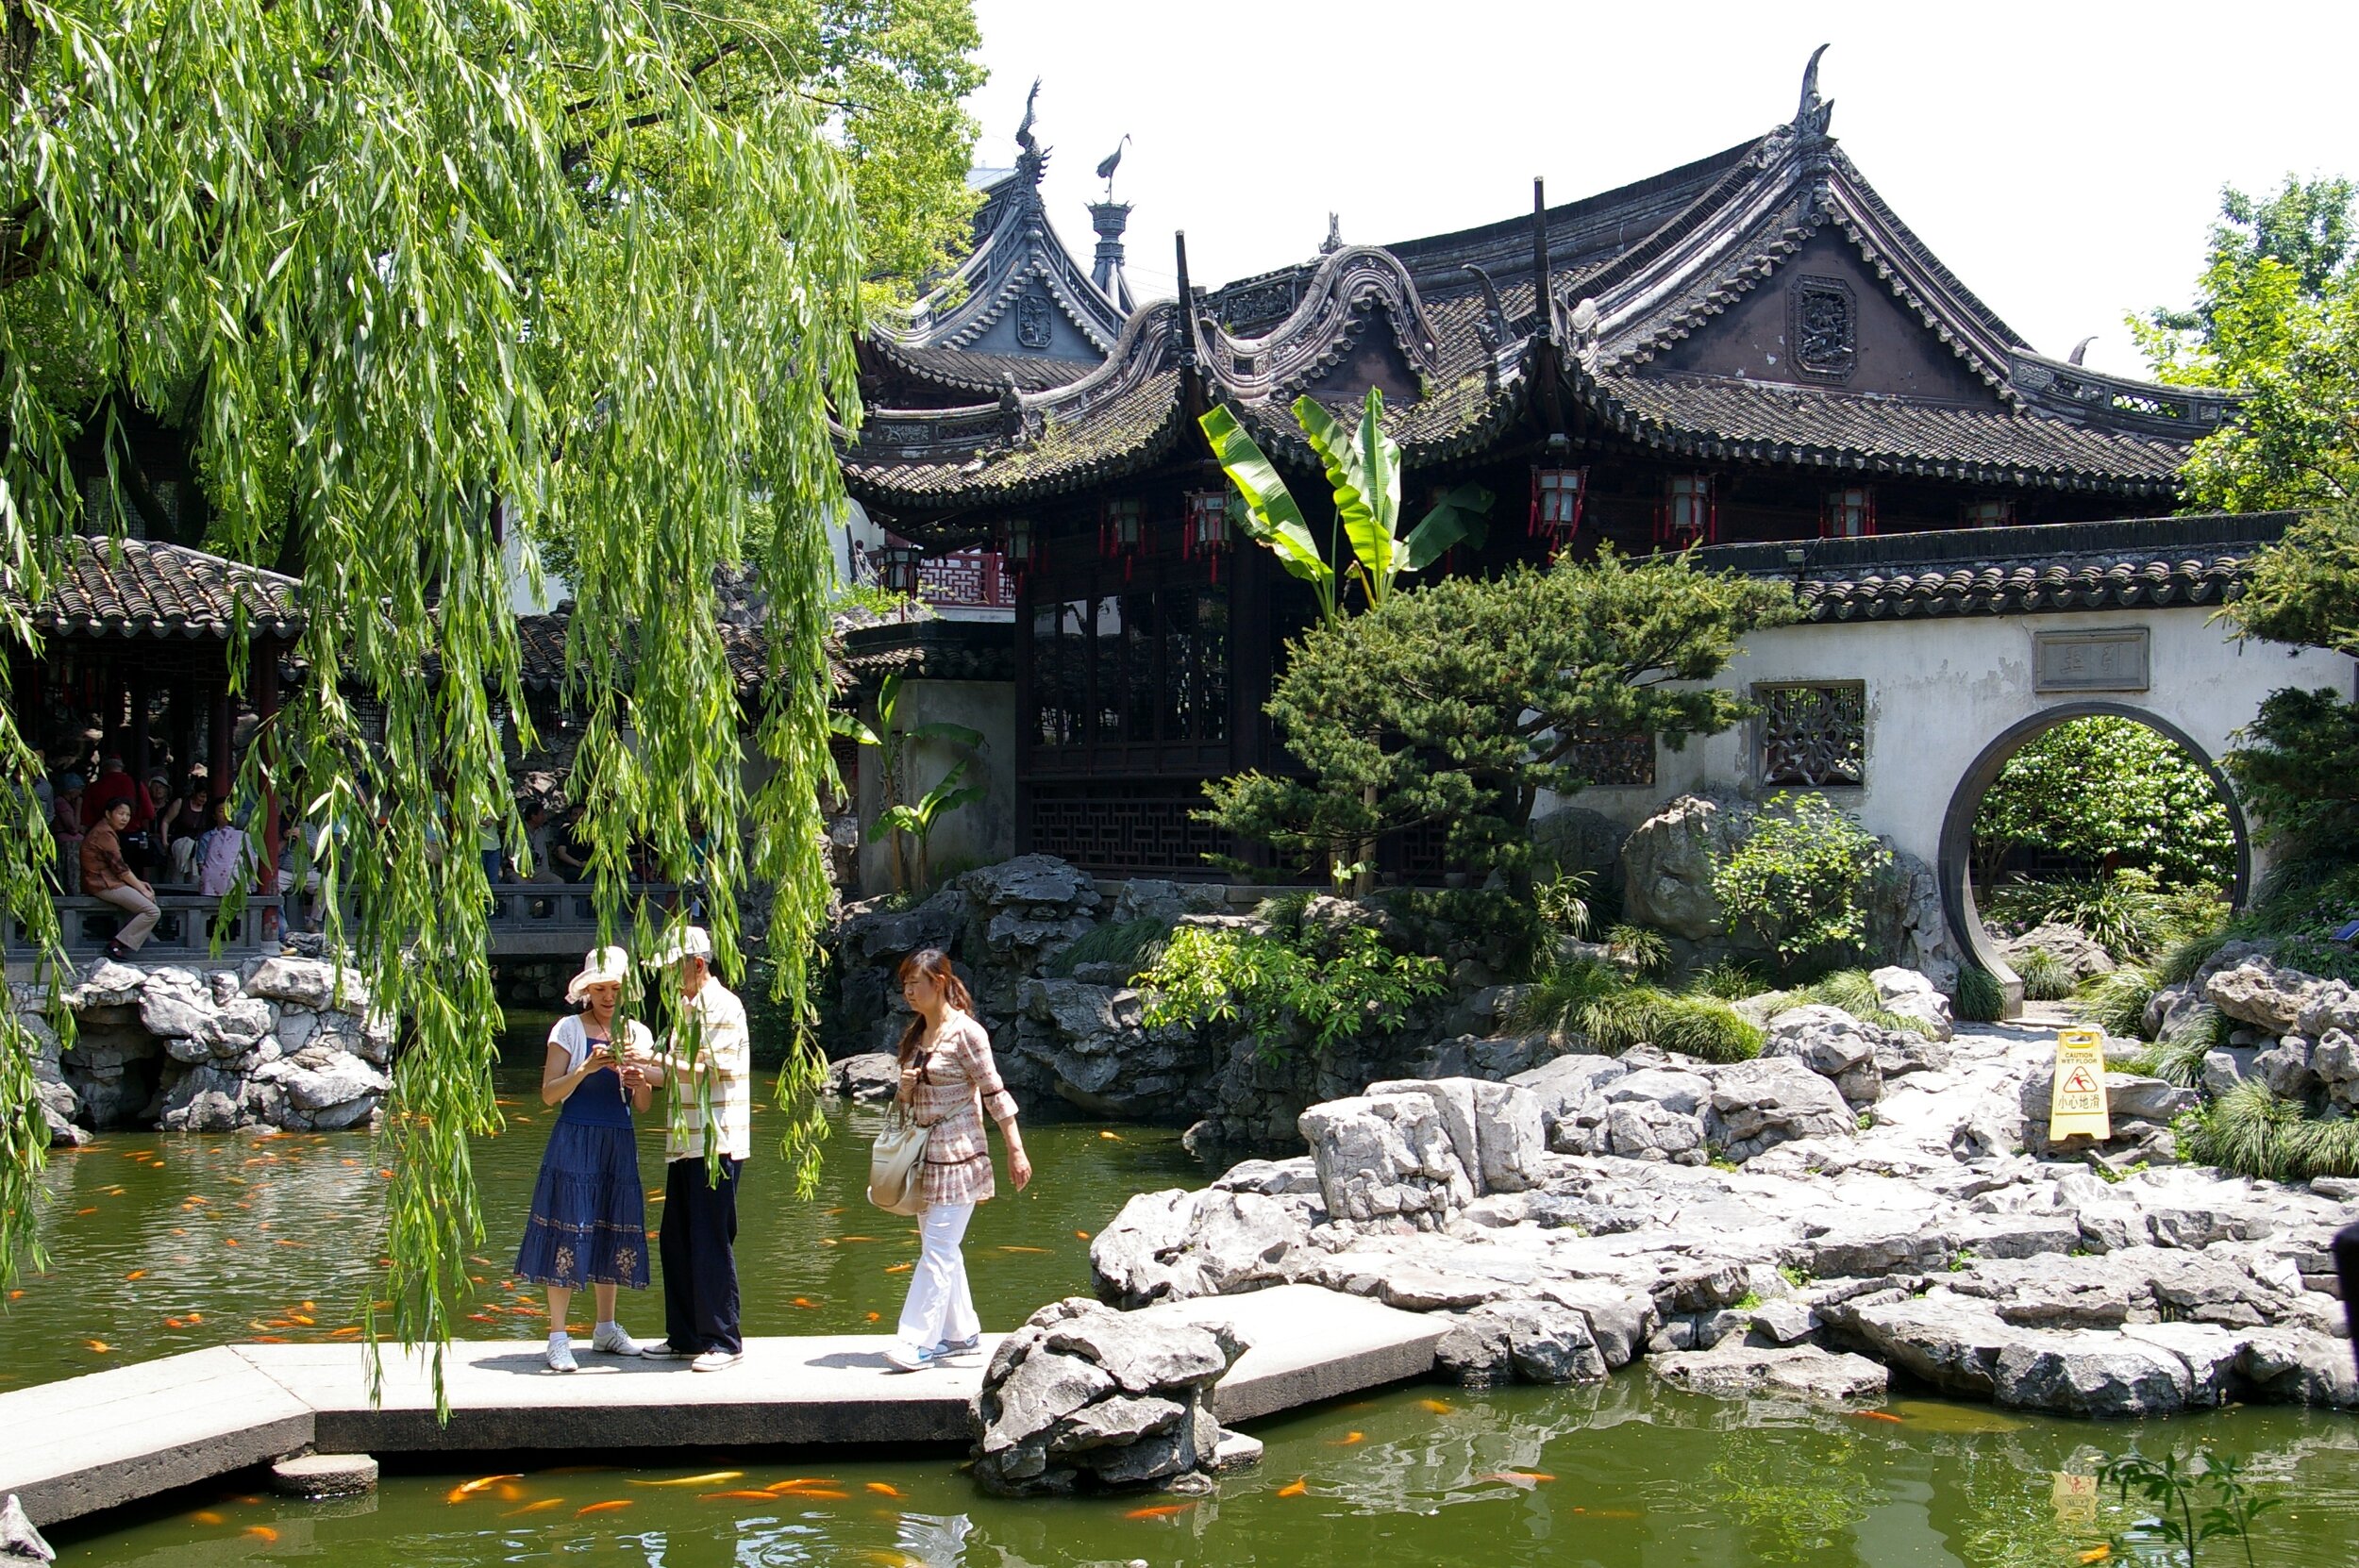 20090510_Shanghai_Yuyuan_Gardens_6665.jpg